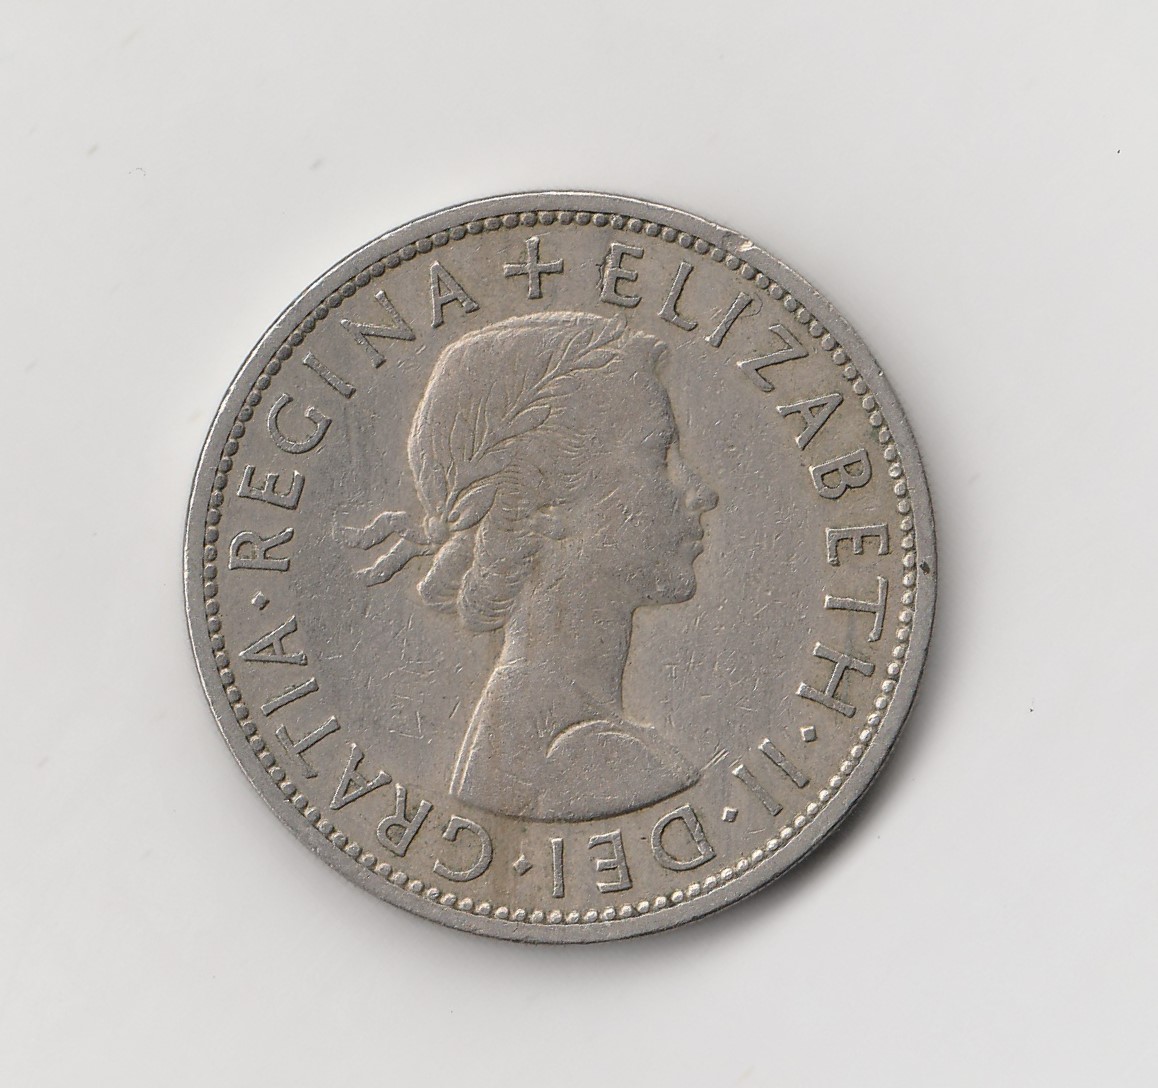  1/2 Crown Großbritannien 1956 (M755)   